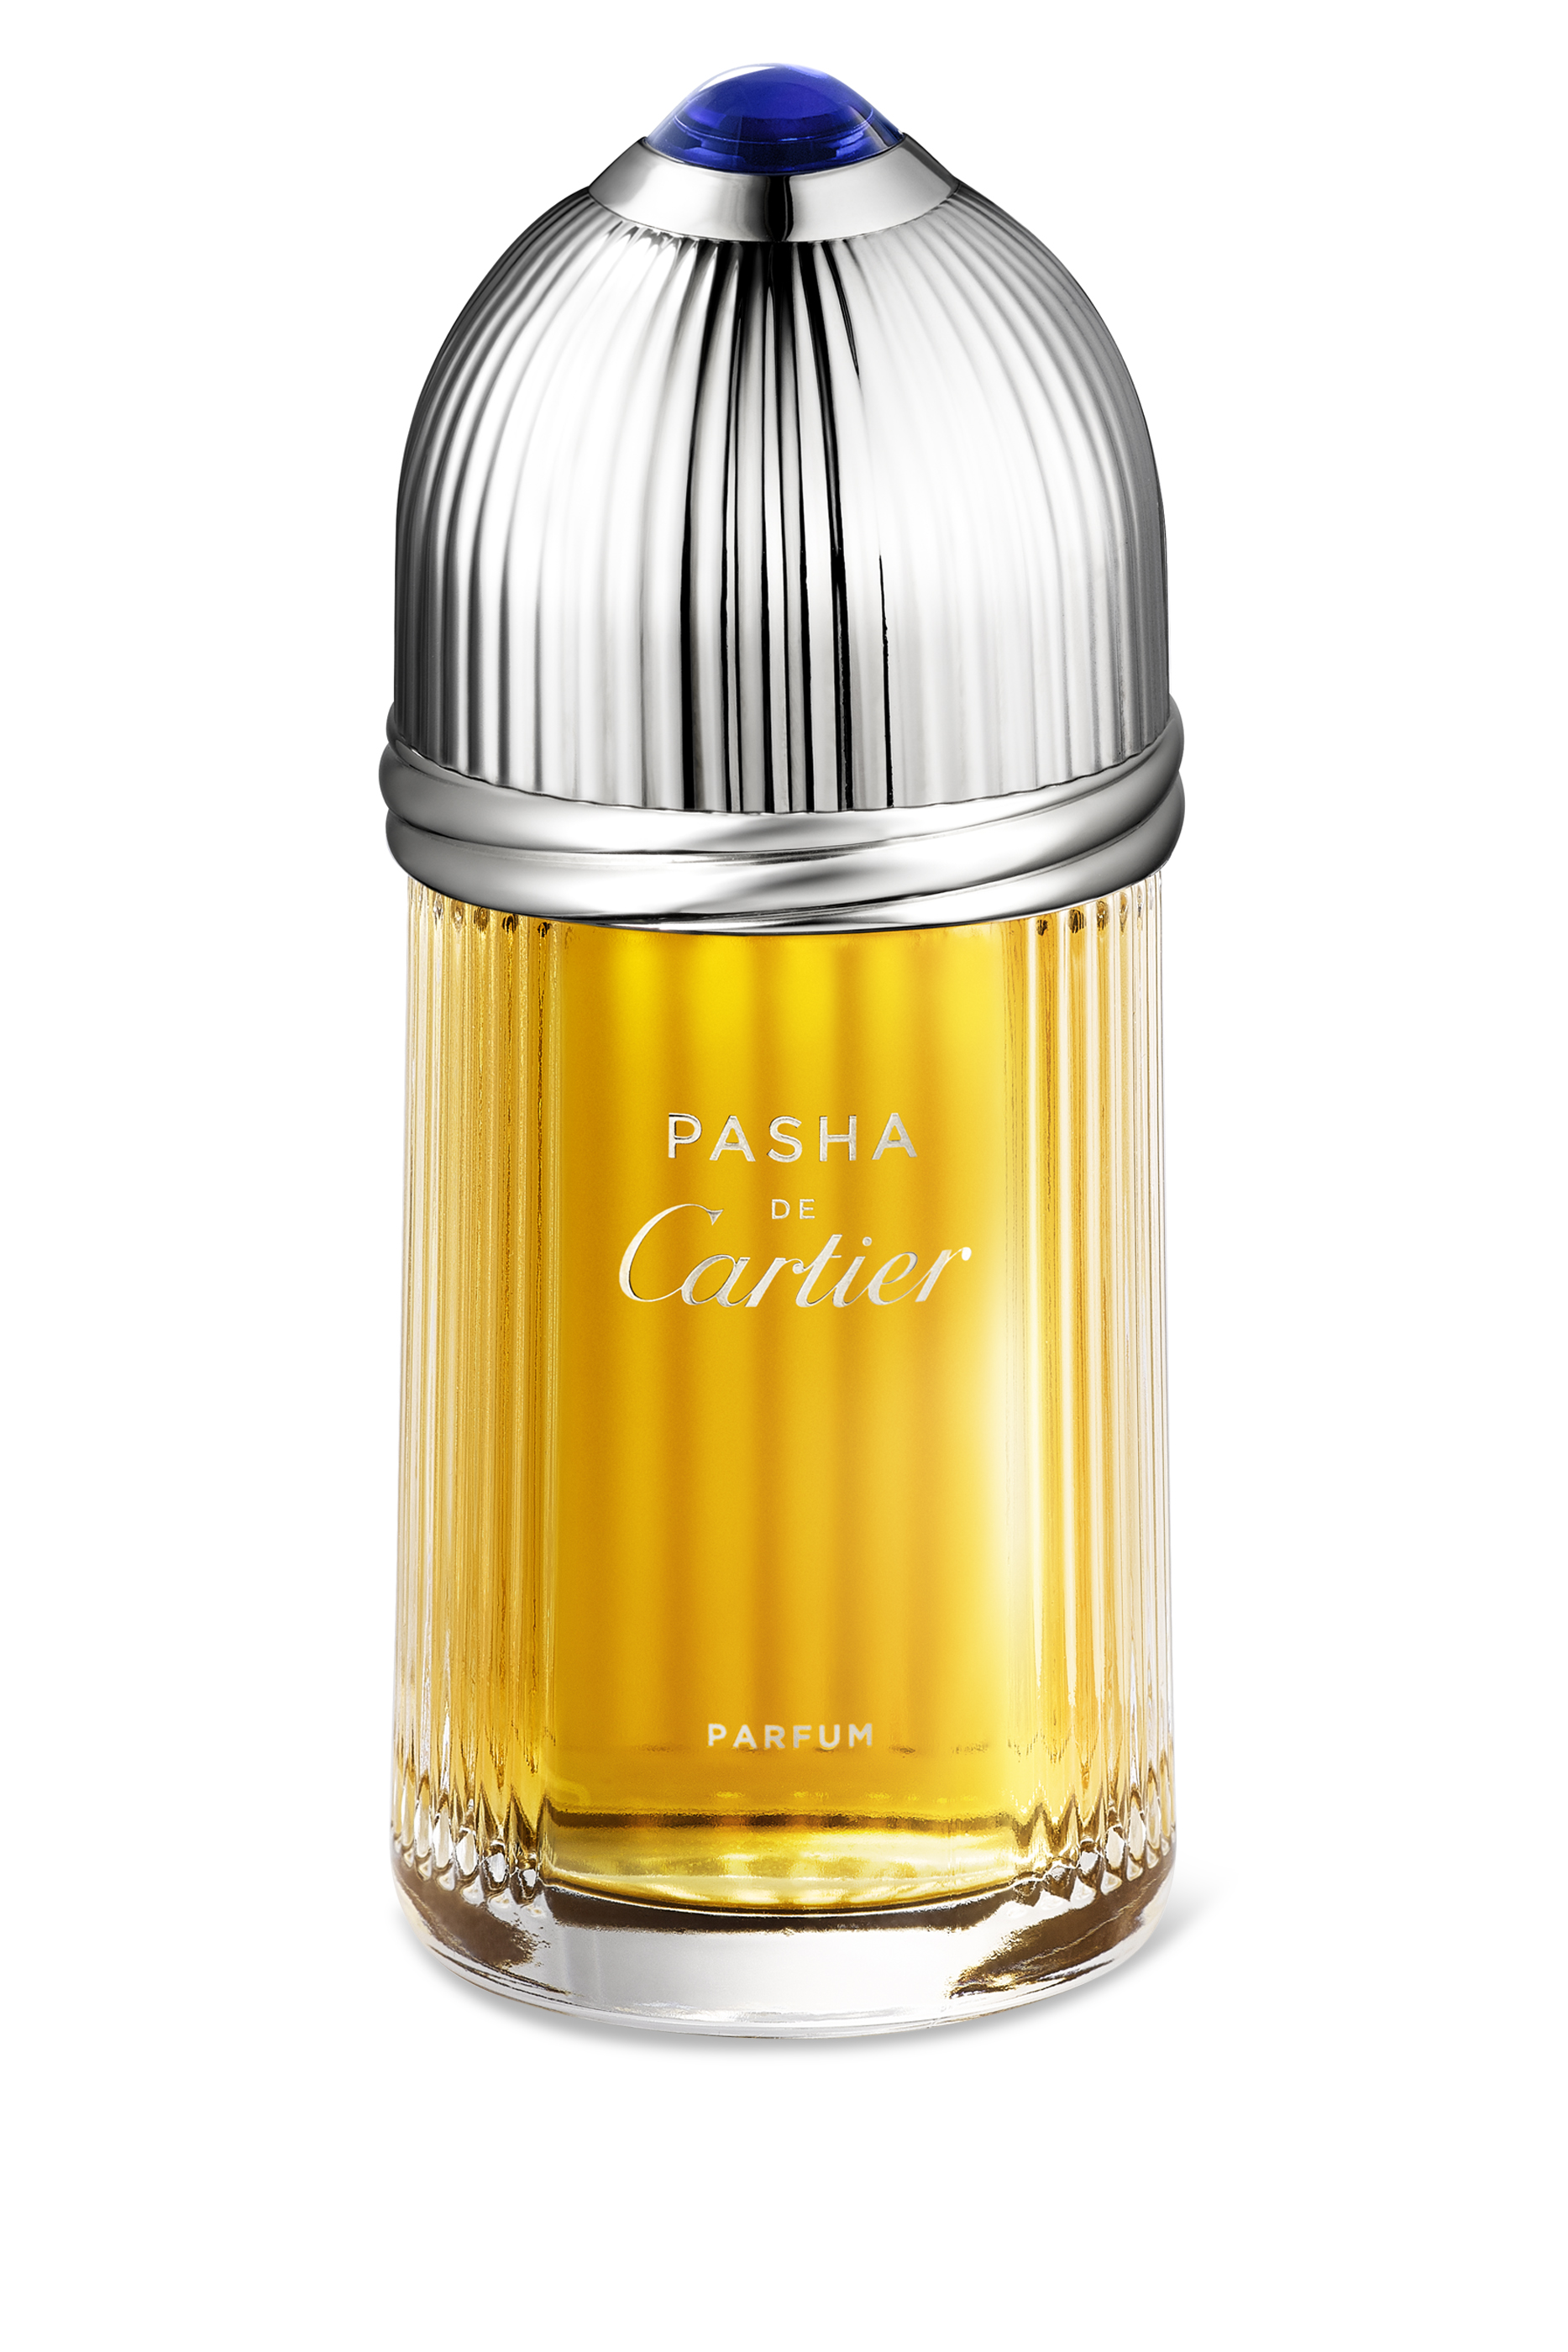 pasha cartier perfume price